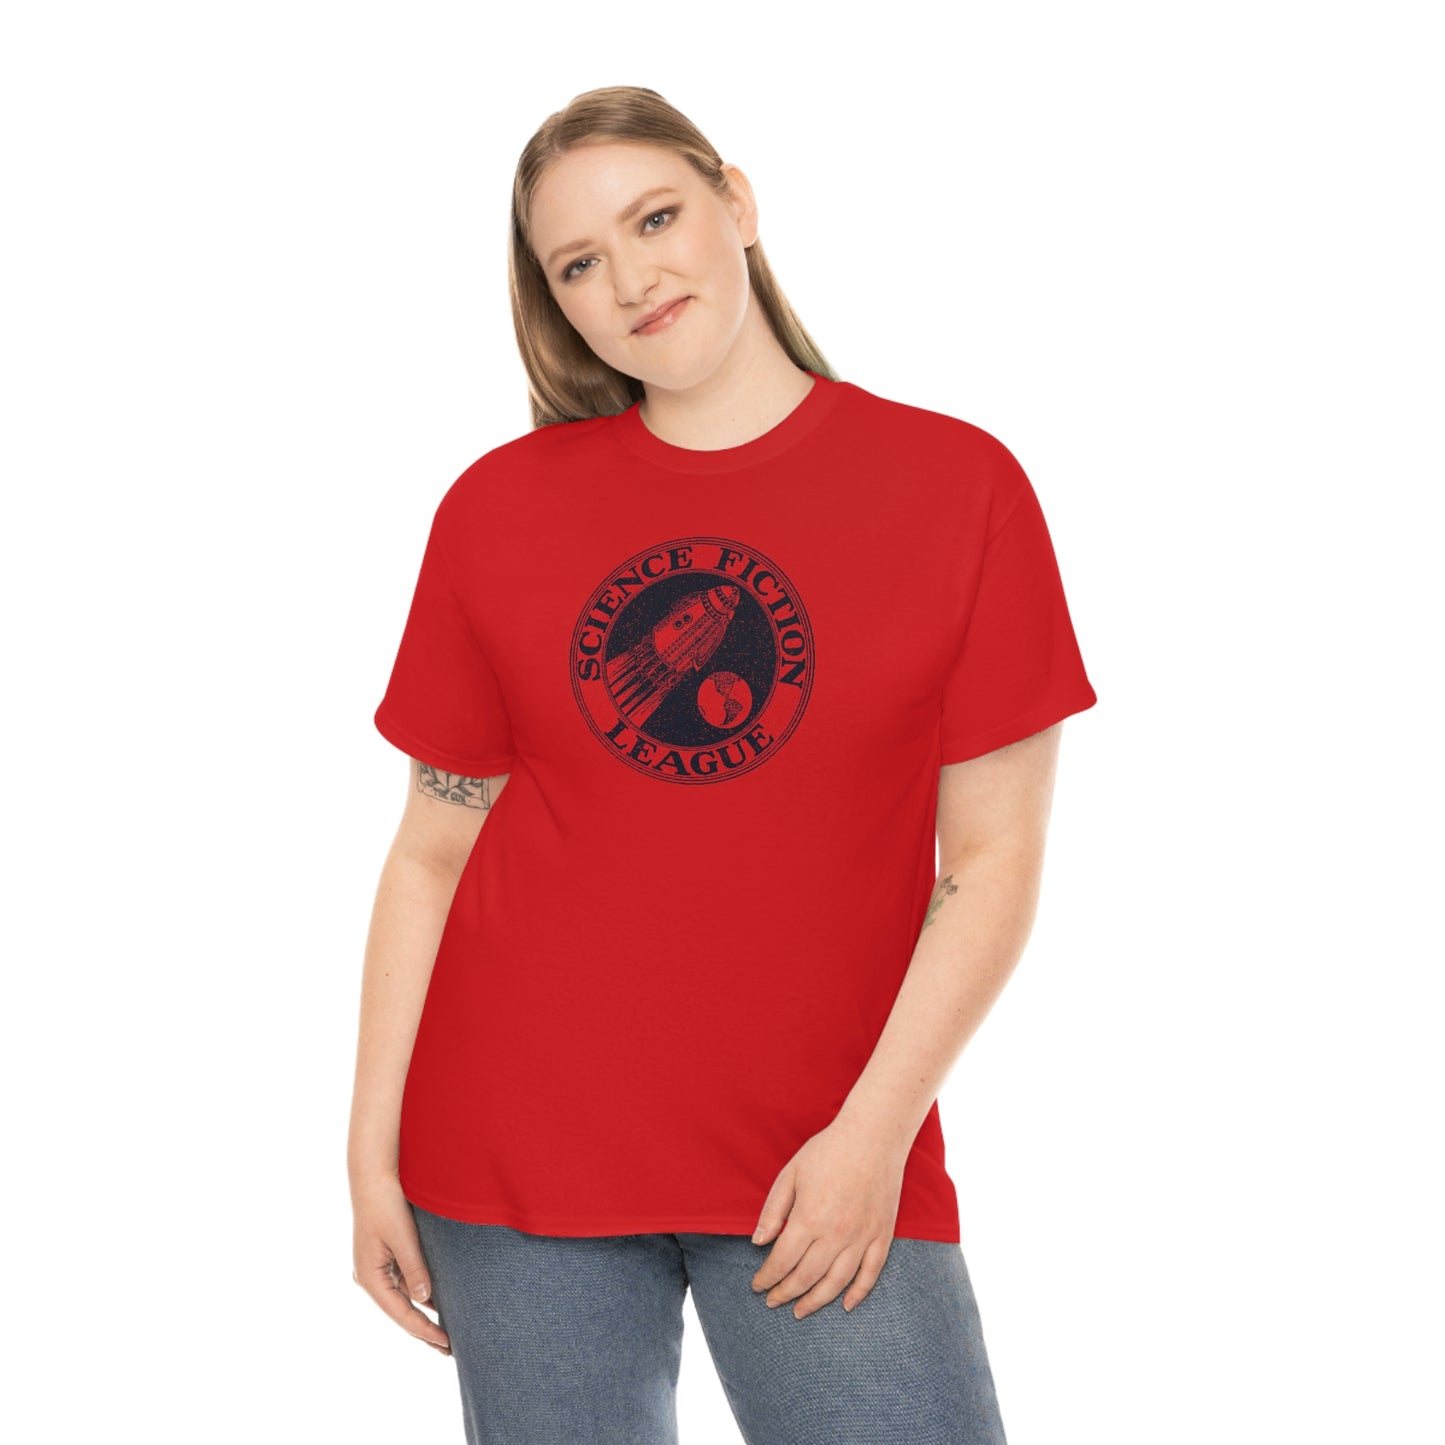 Science Fiction League T-Shirt